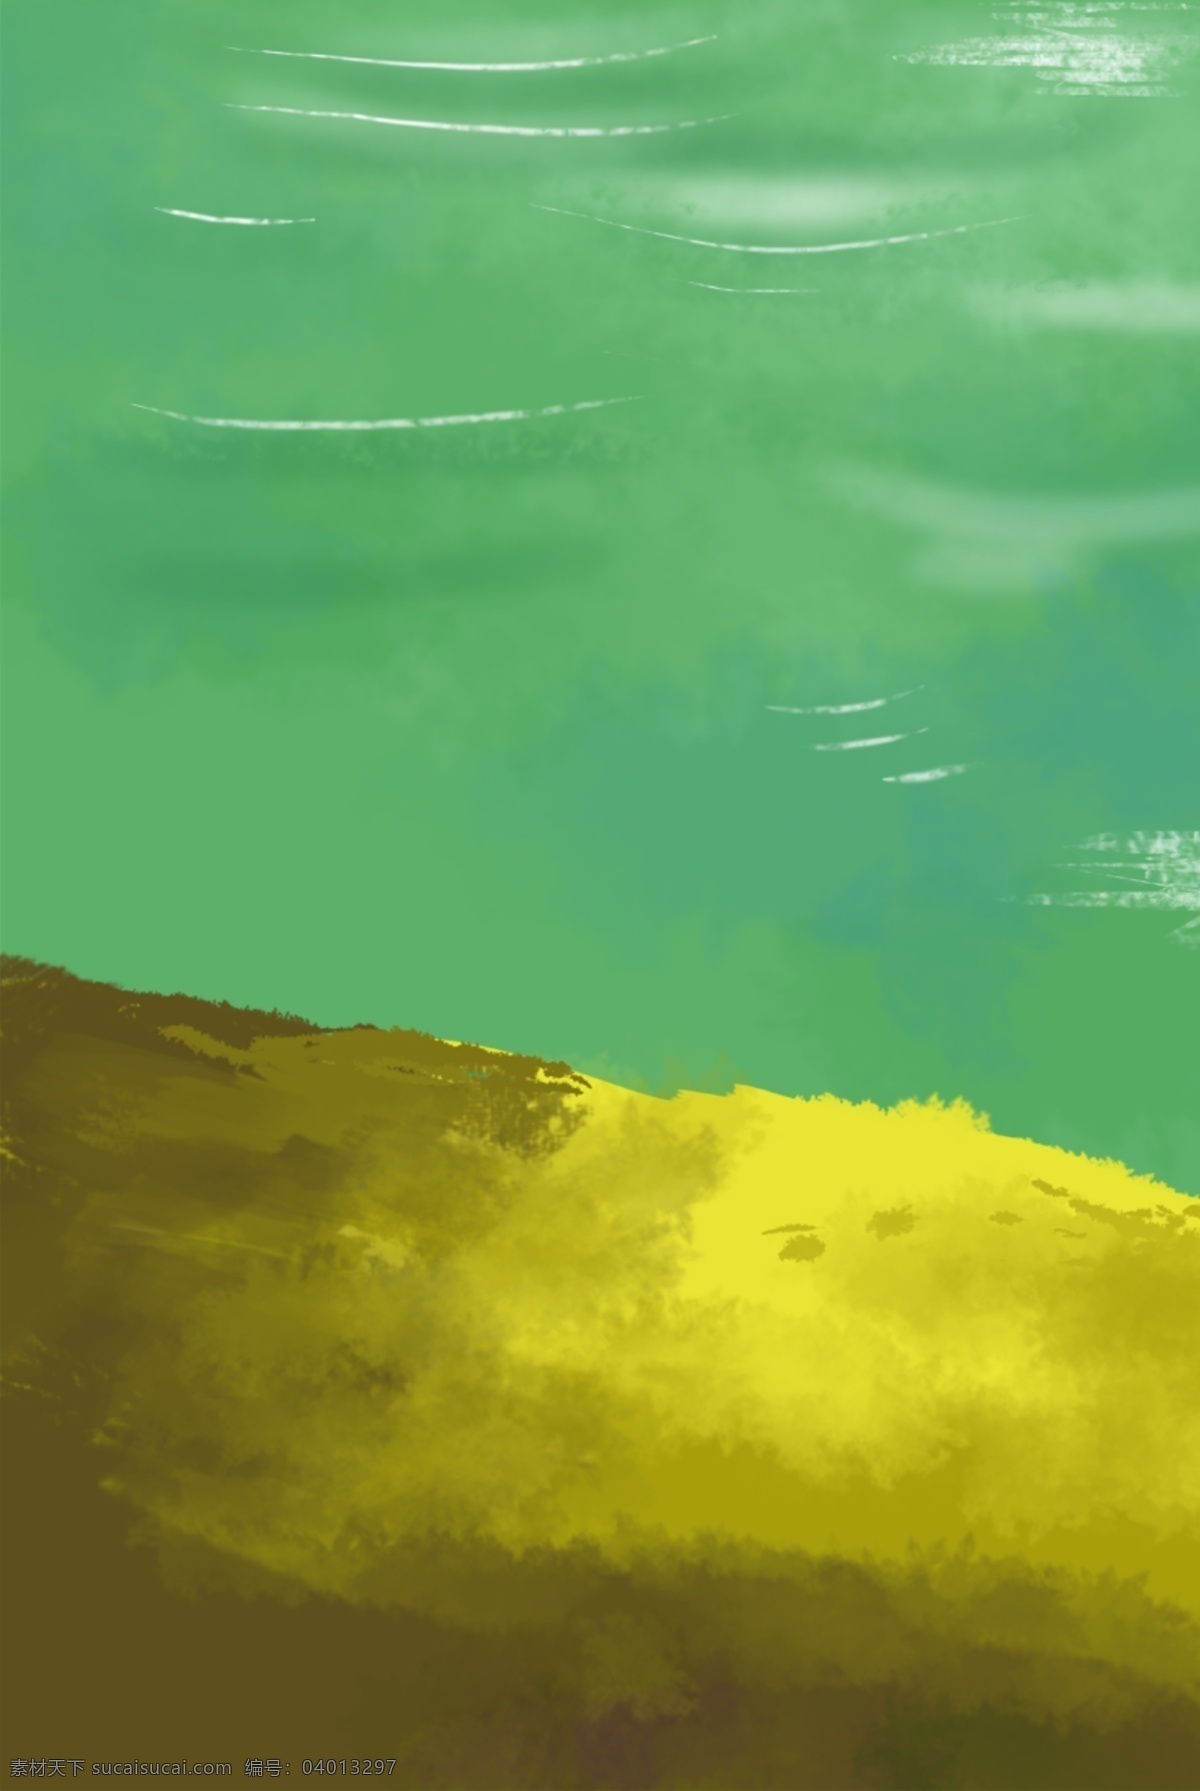 手绘 卡通 唯美 湖边 草地 背景 图 湖水 绿色 黄色 手绘草地背景 卡通背景 创意手绘 矢量图